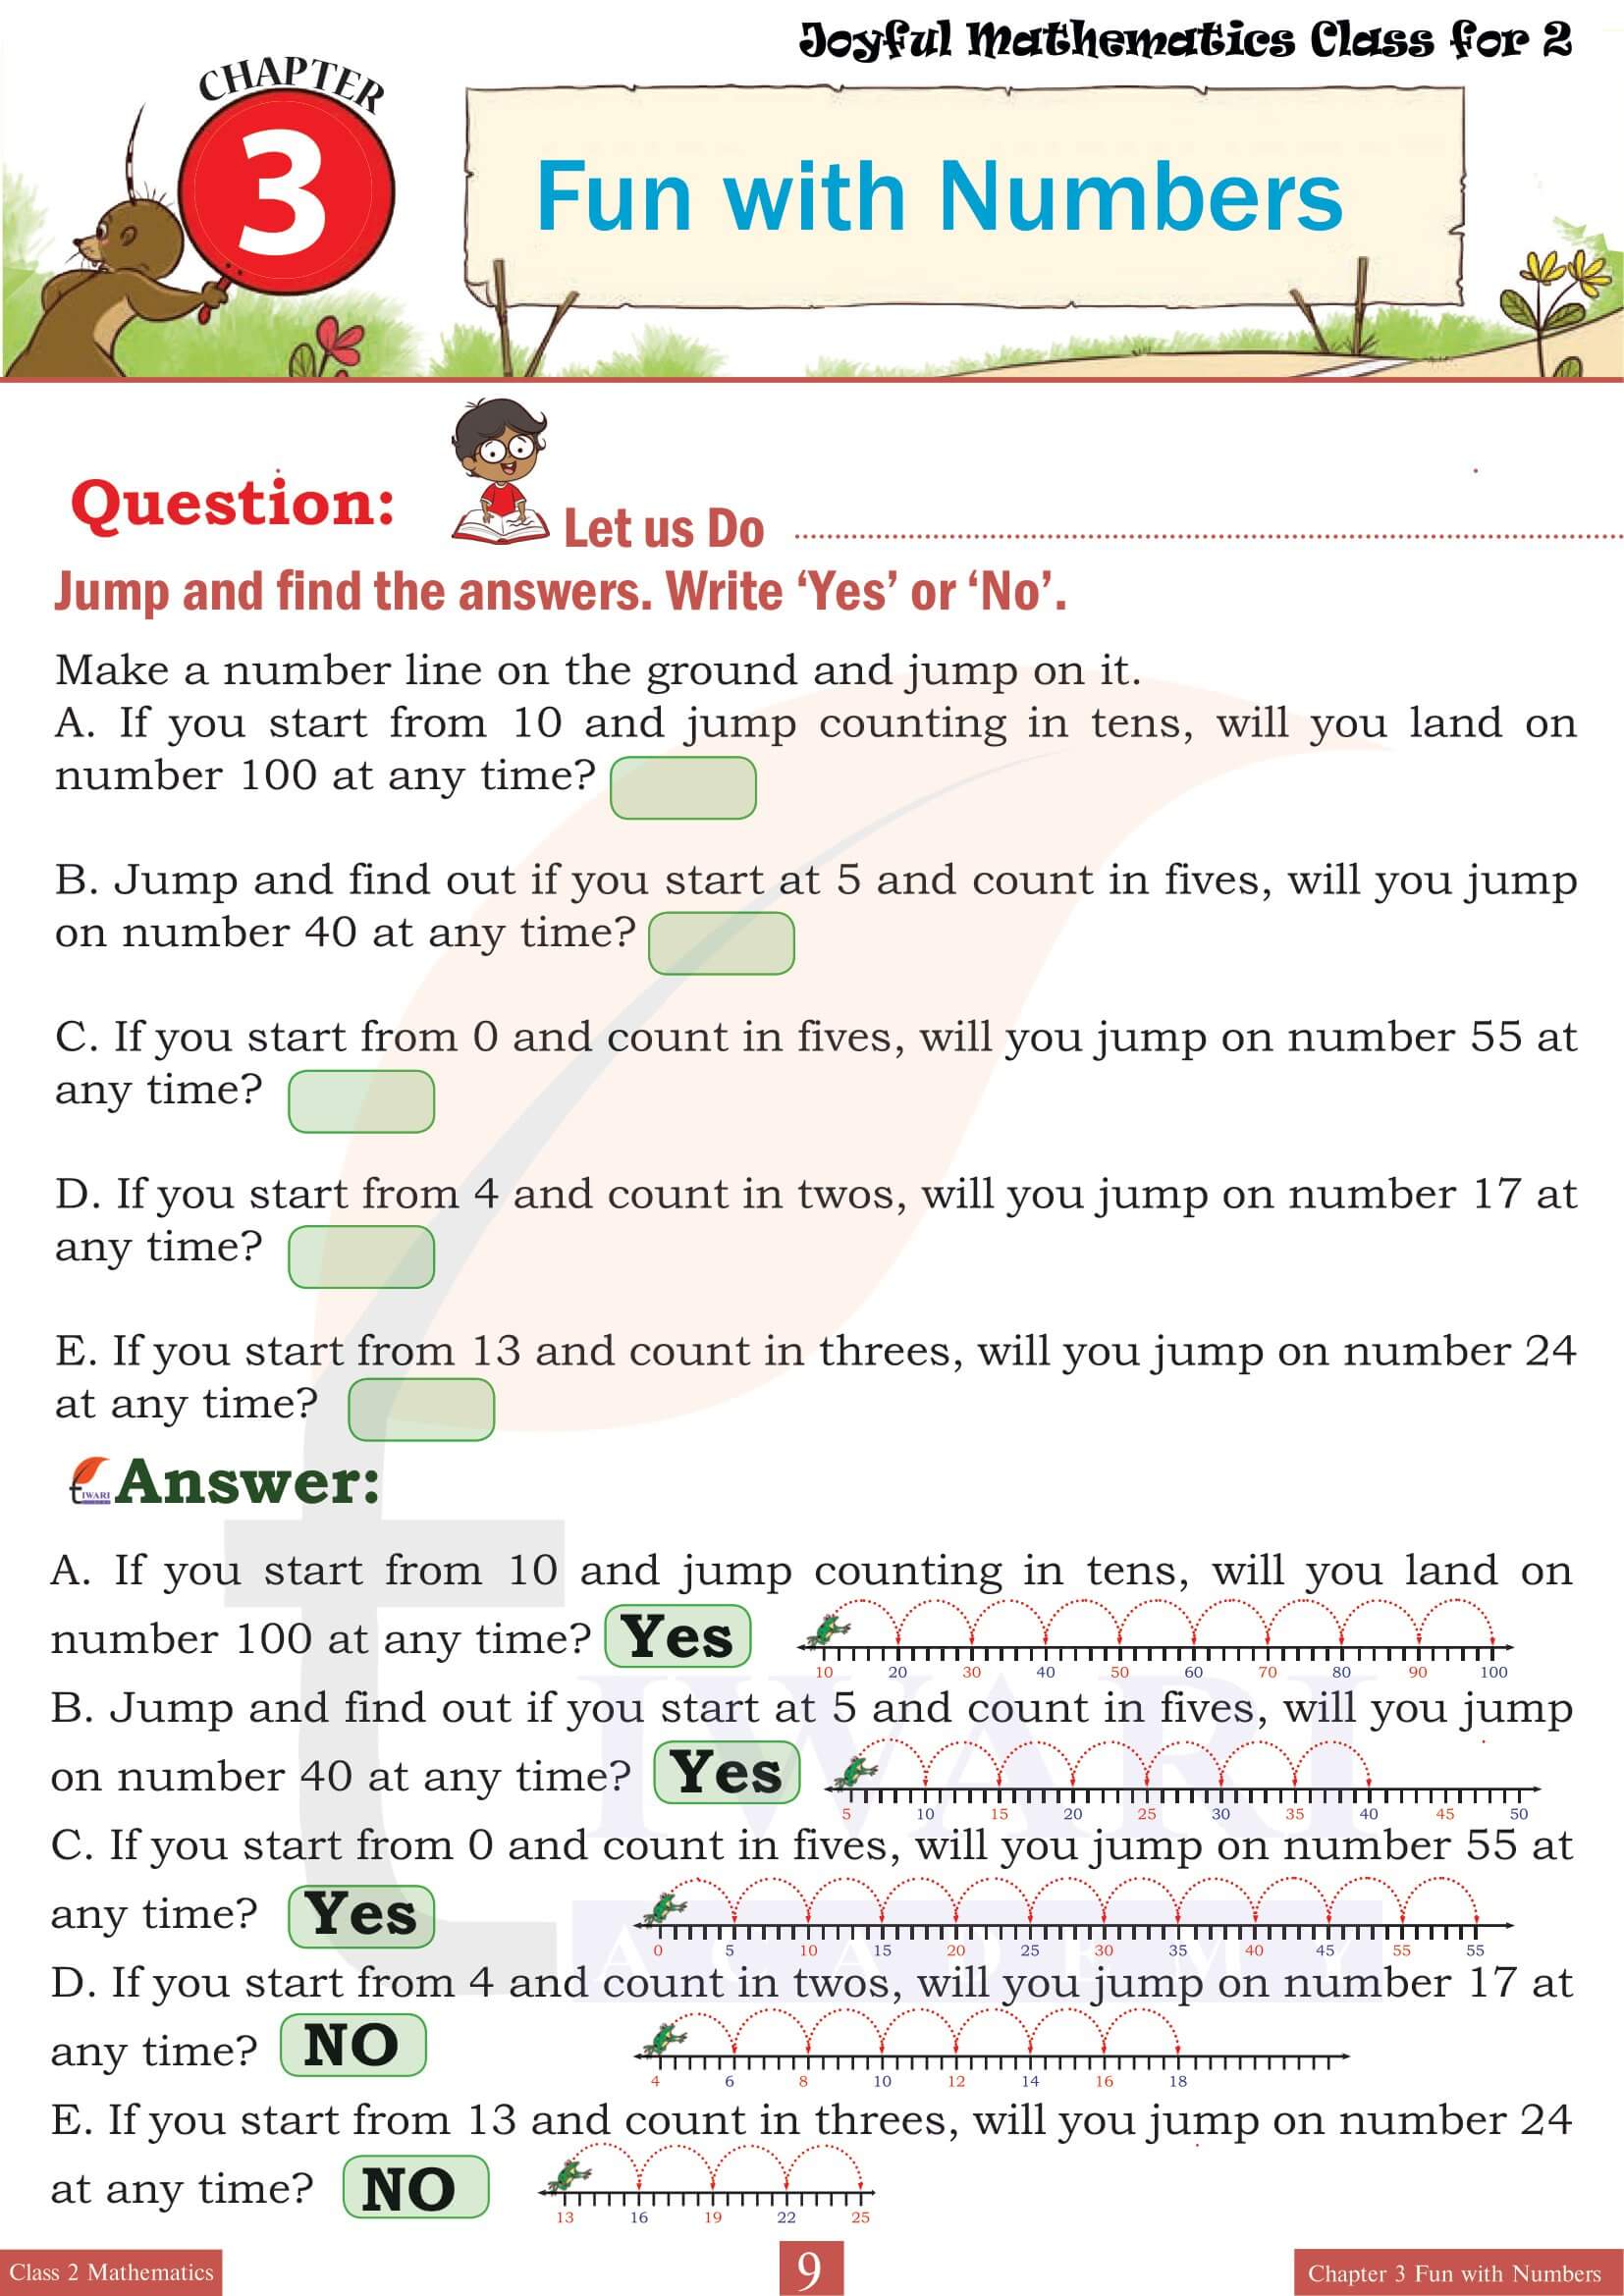 Class 2 Joyful Maths Chapter 3 Question Answers